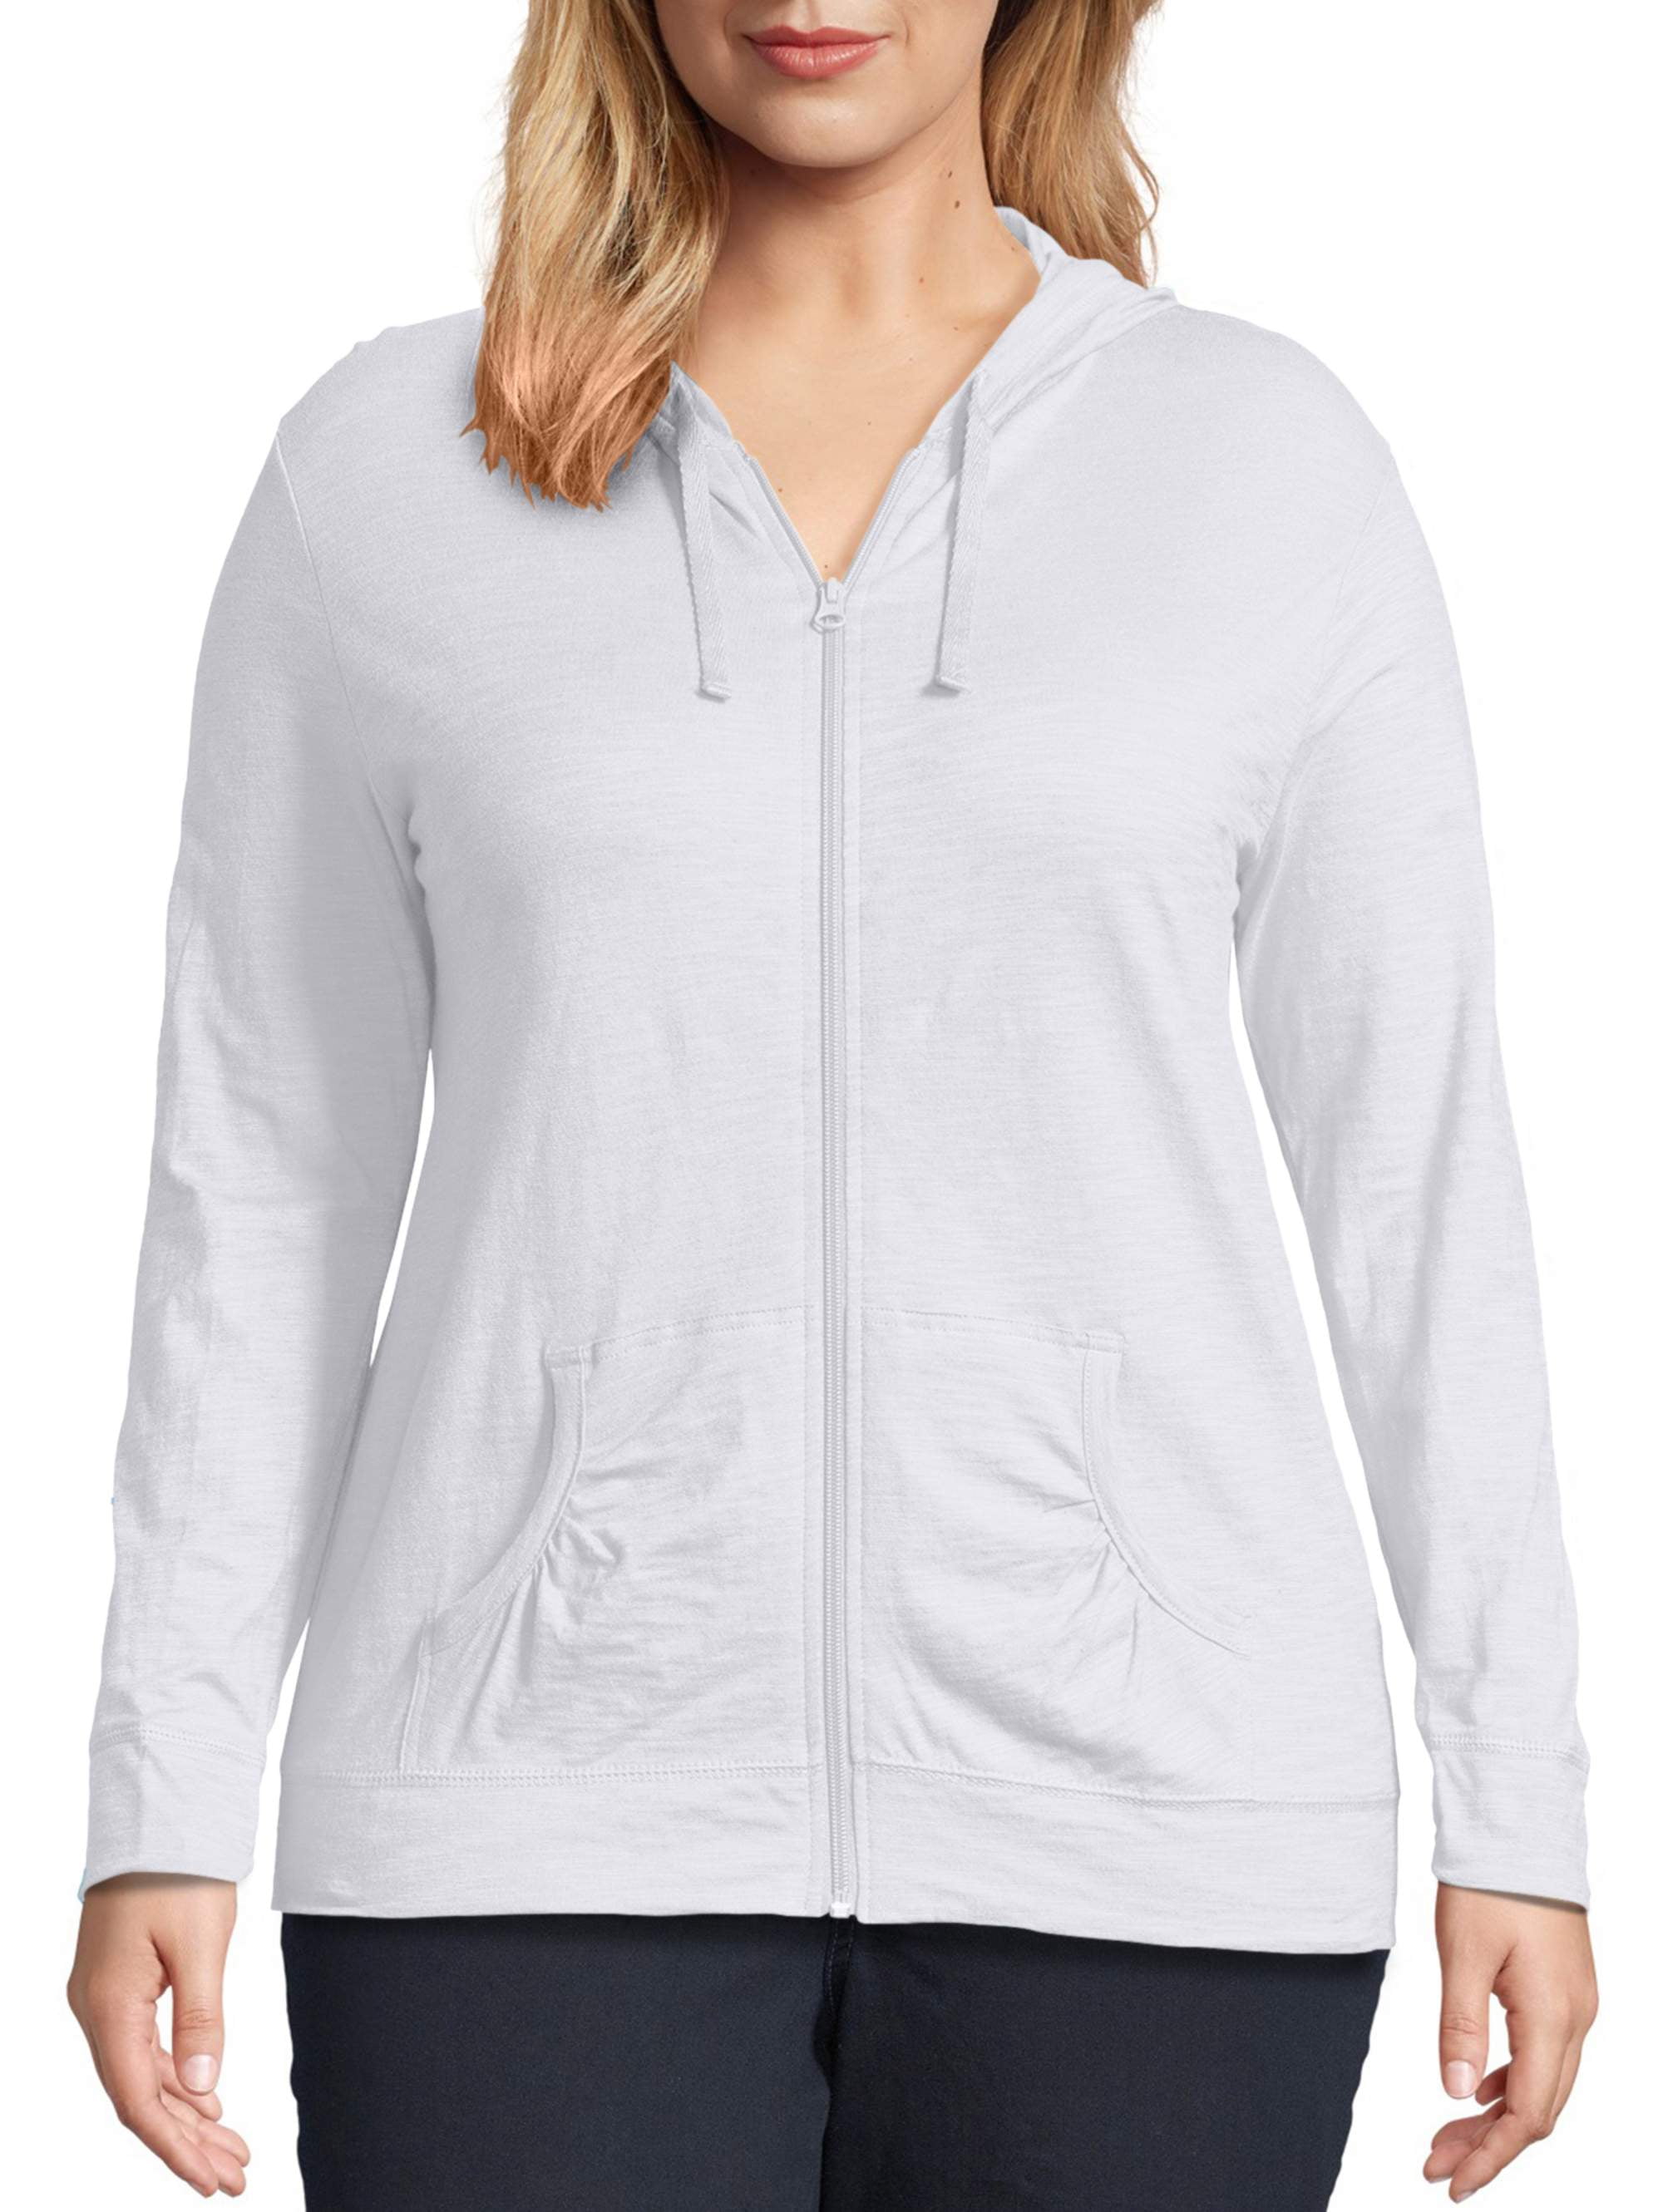 JMS by Hanes Women's Plus Size Fleece Zip Hood Jacket